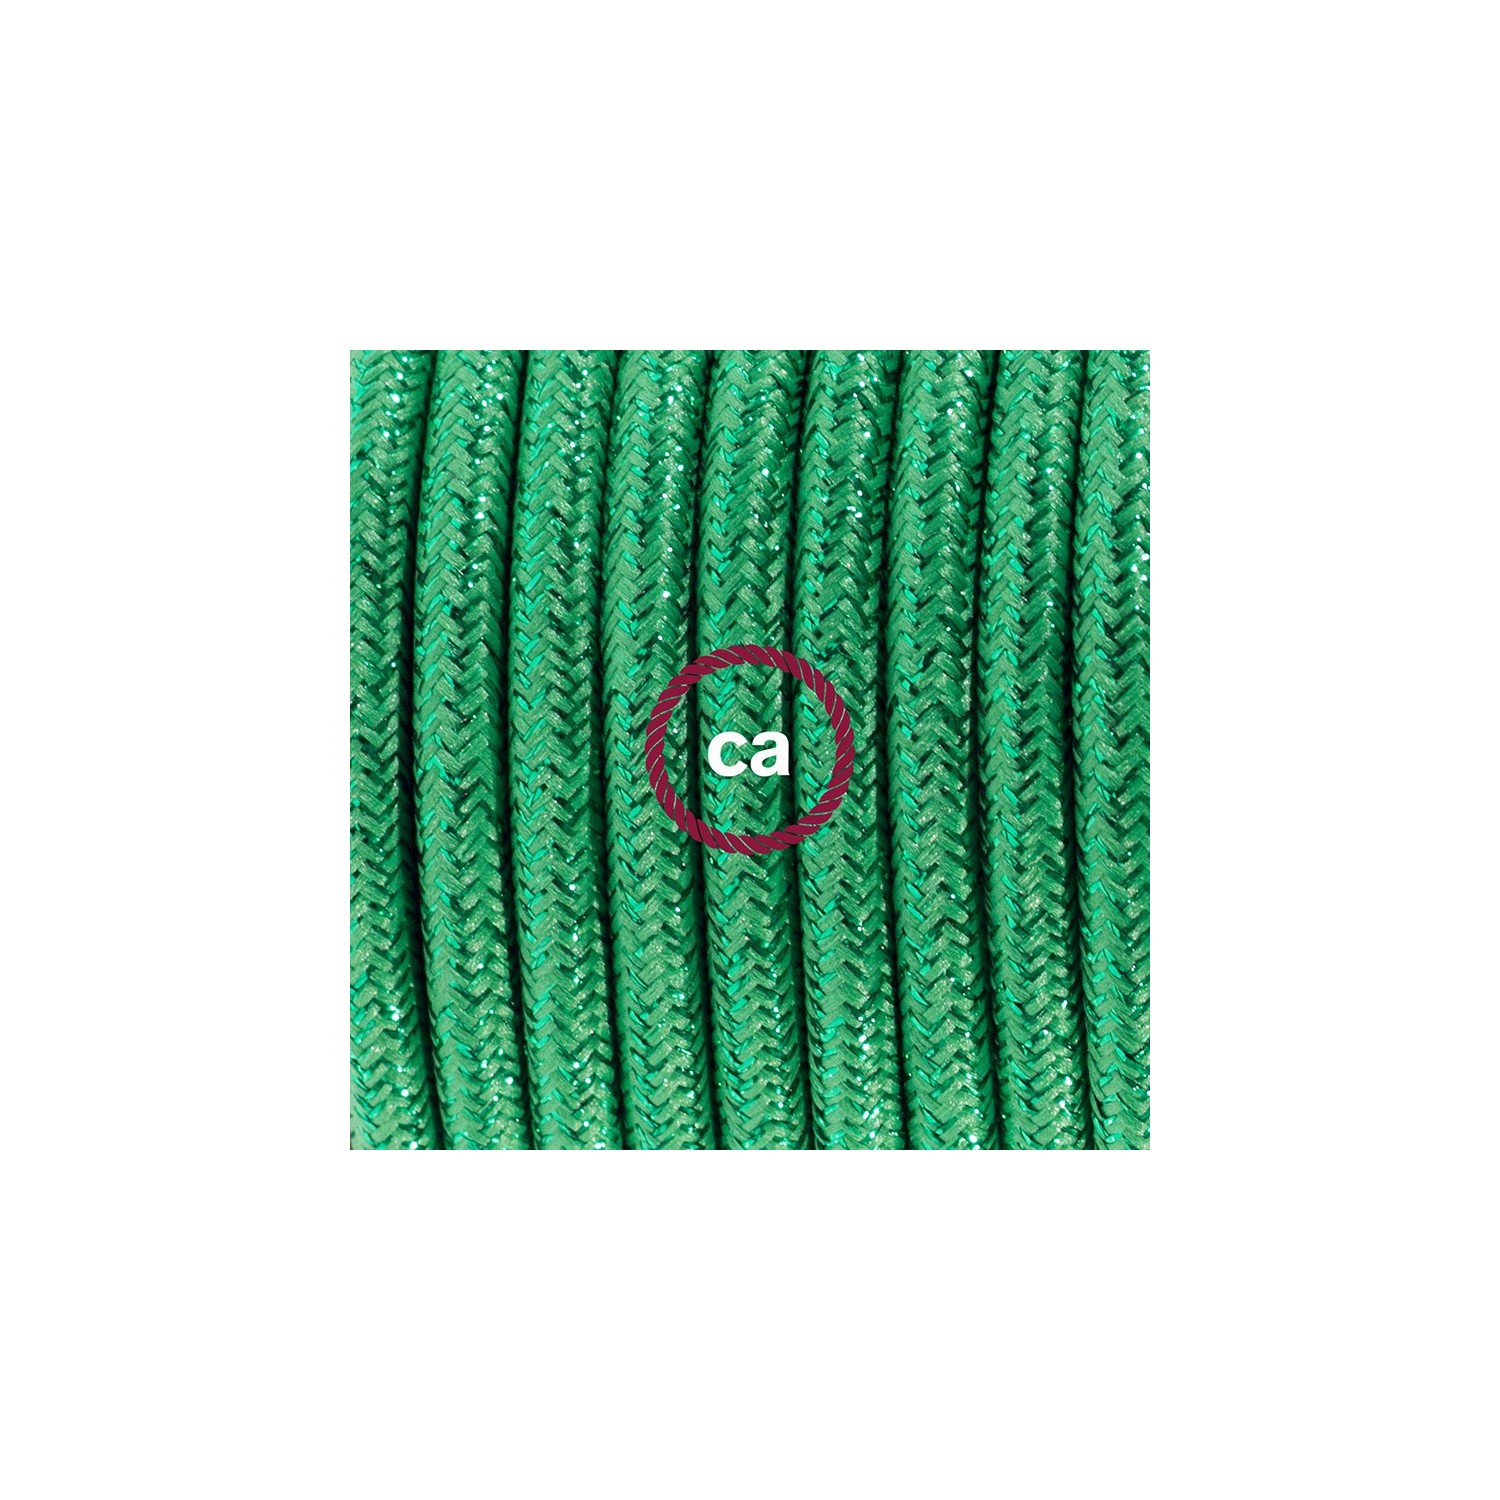 Ledningssæt med fodkontakt, RL06 Glinsende Grøn viskose 3 m. Vælg farve på kontakt og stik.